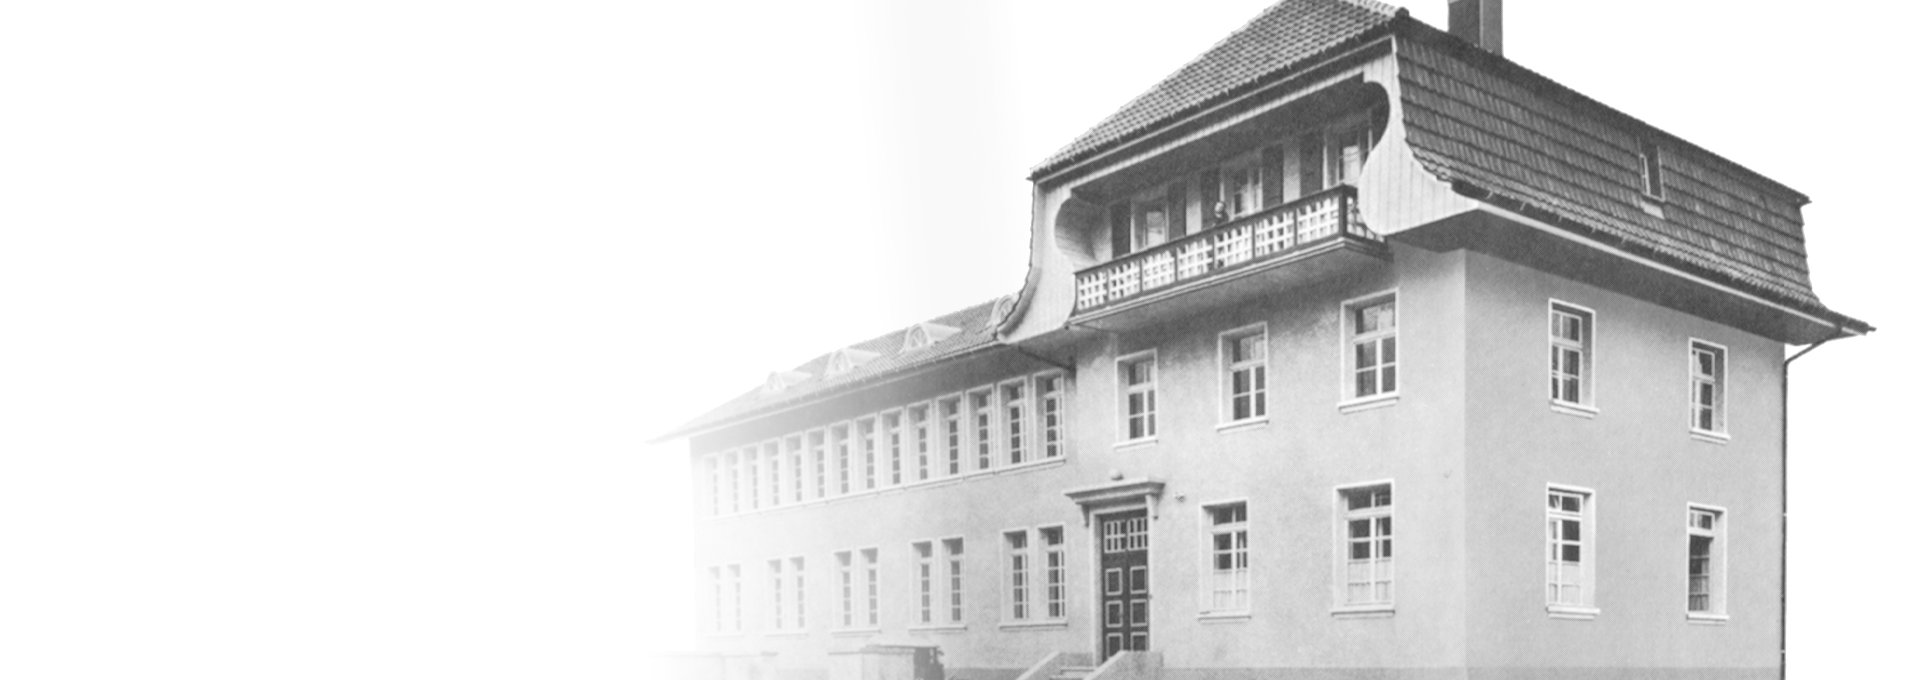 Bernafon'un Flamatt'taki ilk fabrikasına ait eski, siyah beyaz fotoğraf, Bern, İsviçre, 1925